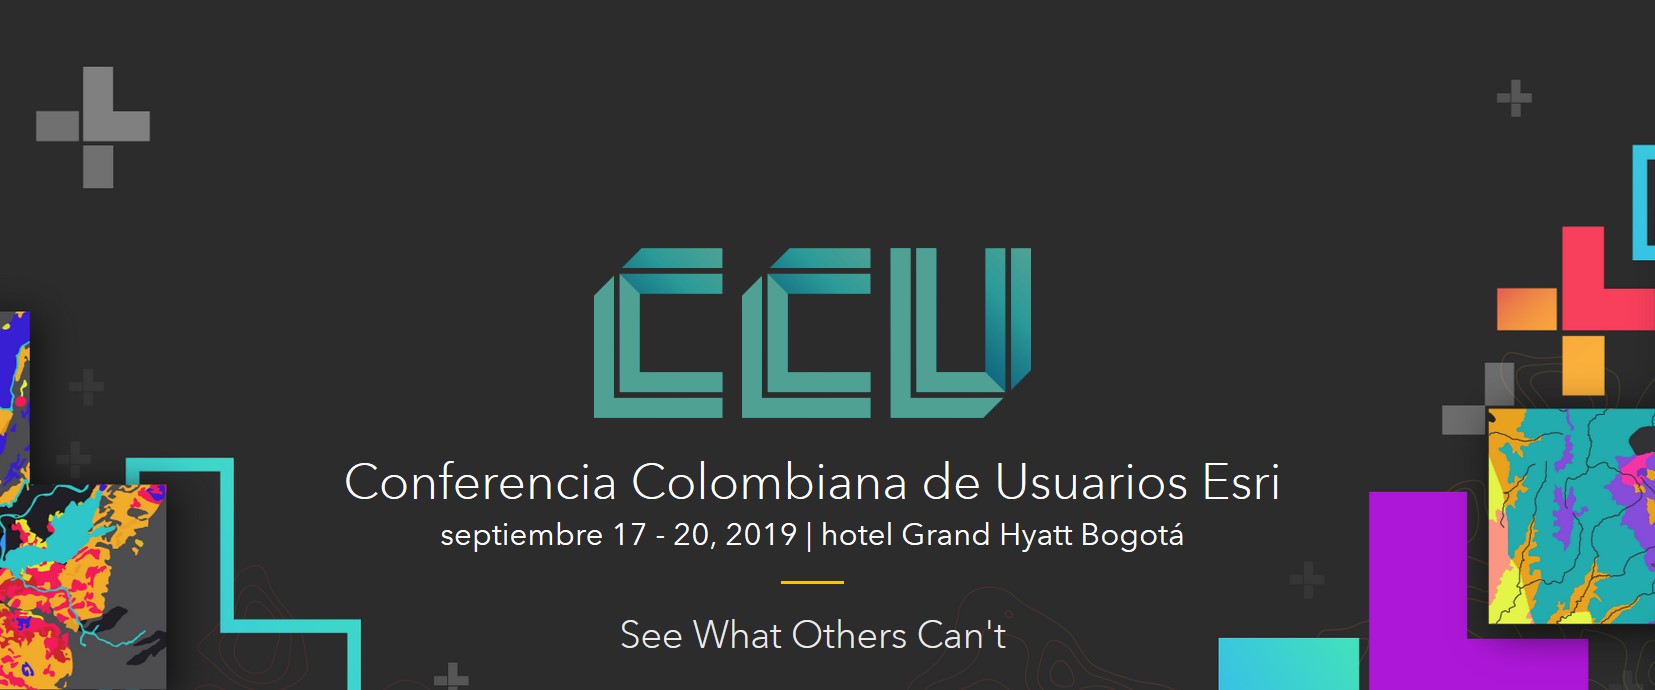 Conferencia Colombiana de Usuarios Esri (CCU)